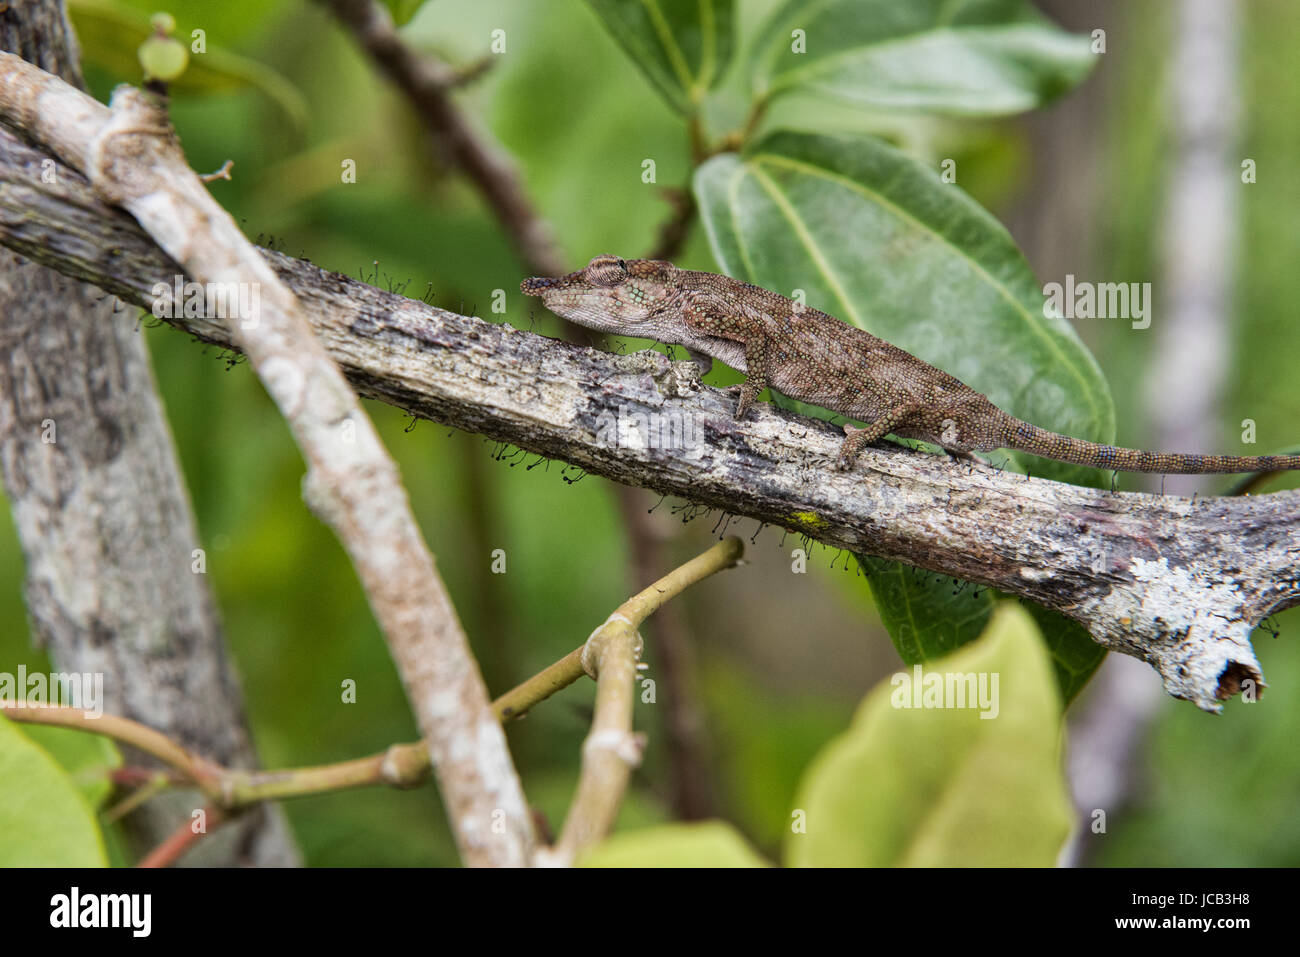 Tree chameleon on the move, Andasibe National Park, Madagascar Stock Photo